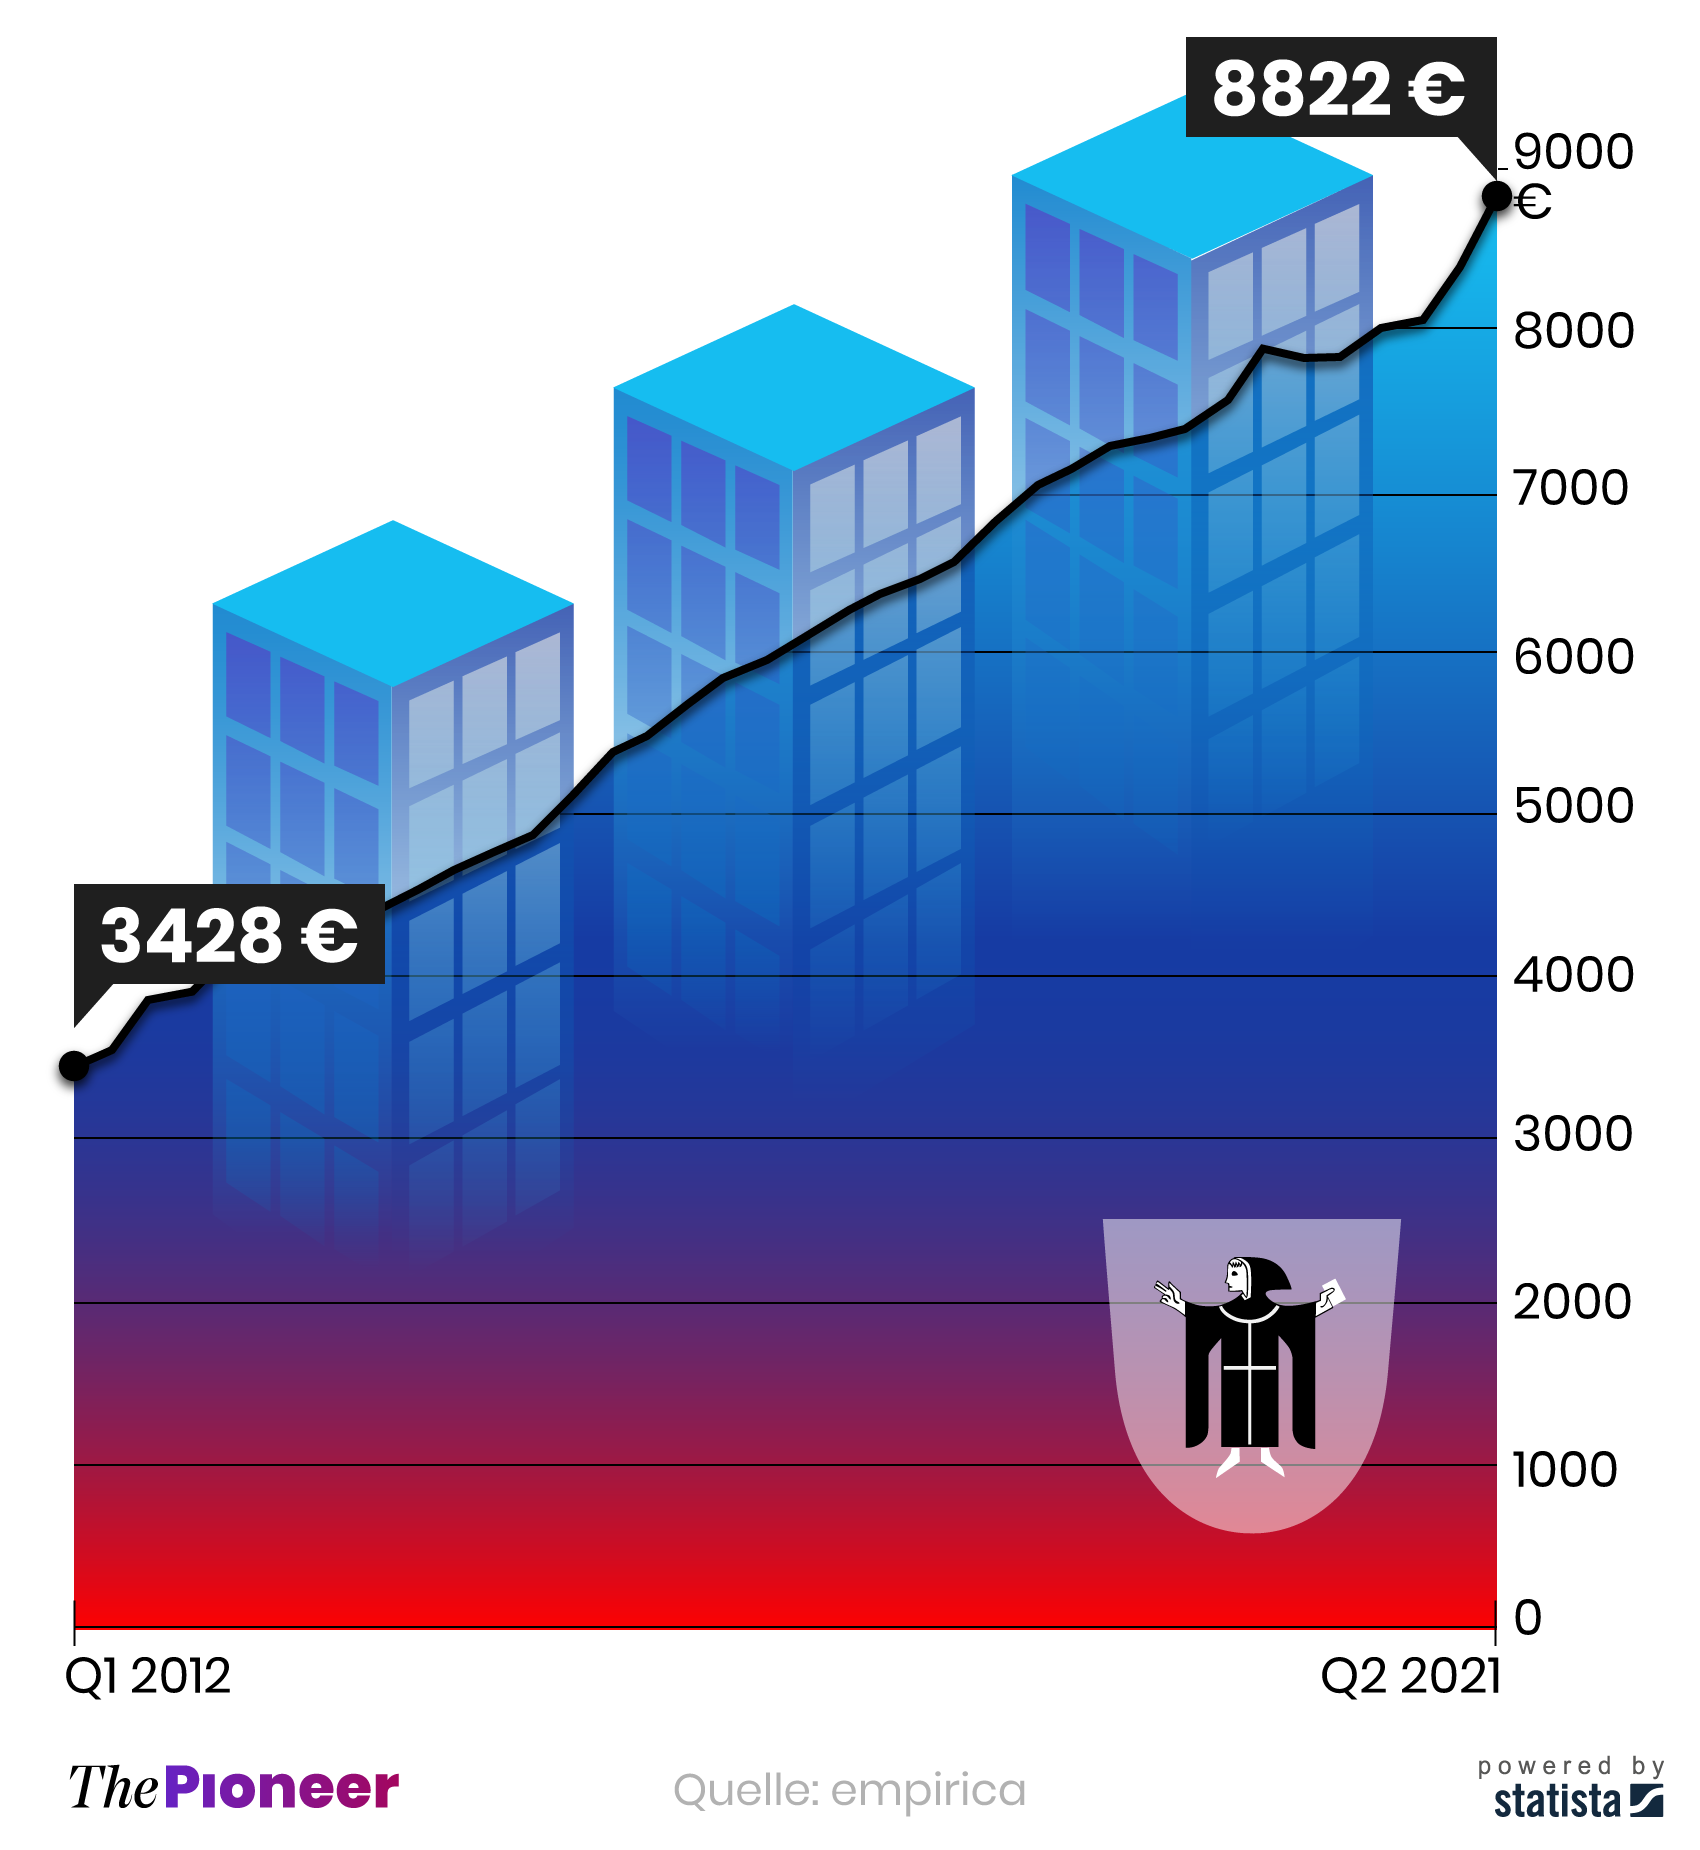 Entwicklung der Angebotspreise für Eigentumswohnungen in München seit 2012, in Euro pro Quadratmeter